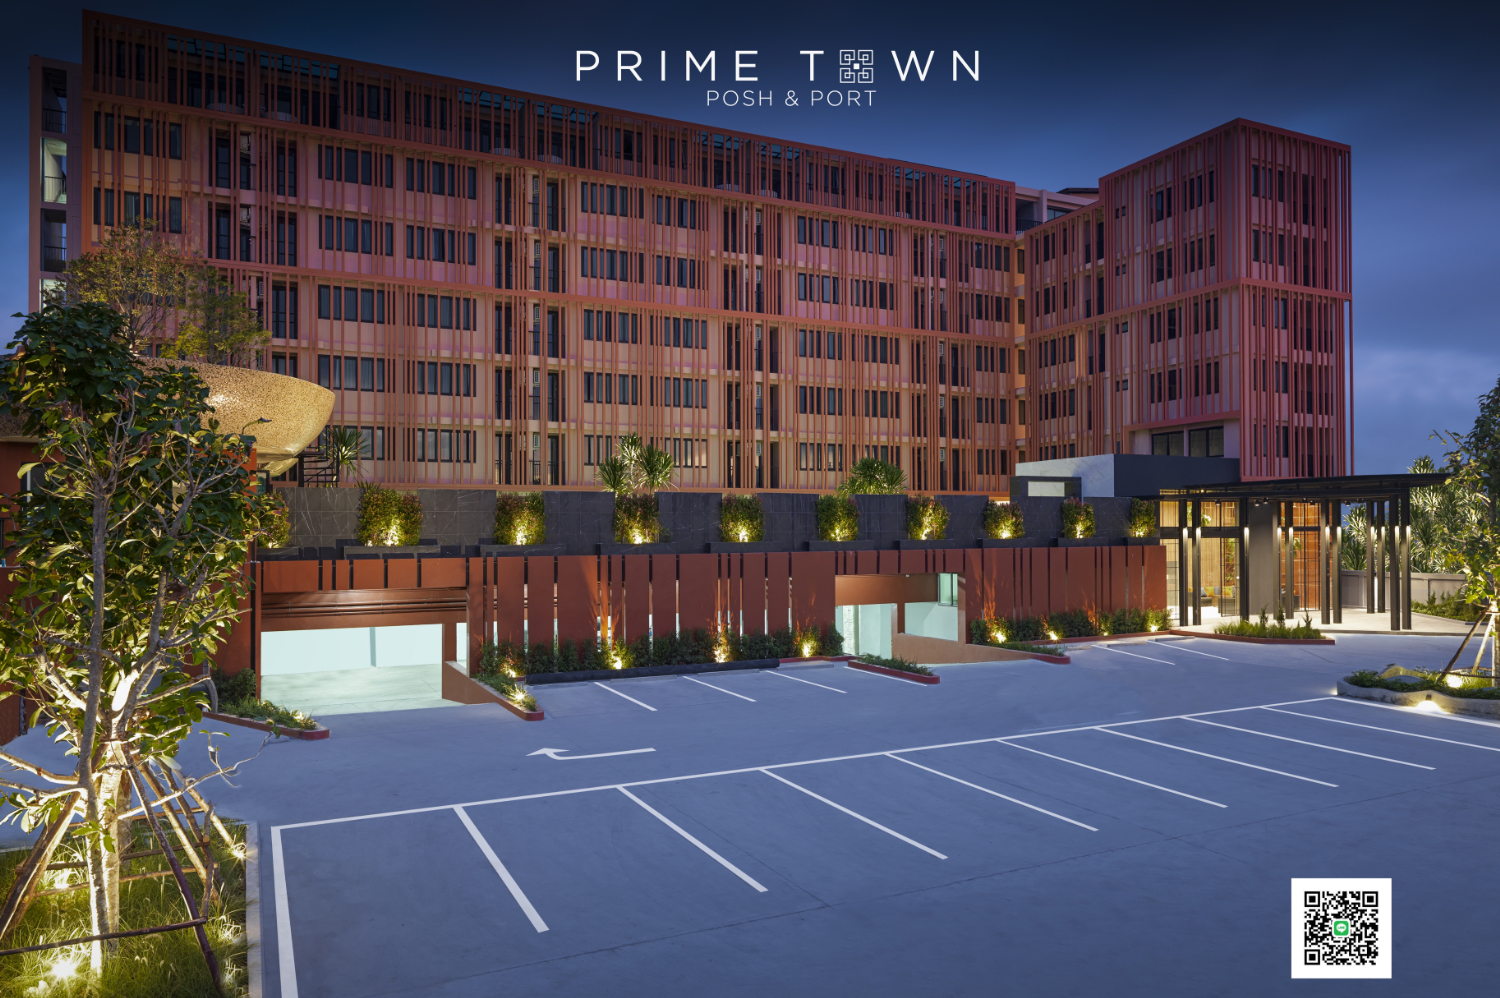 PRIME TOWN - Posh & Port Hotel PHUKET - Image 3